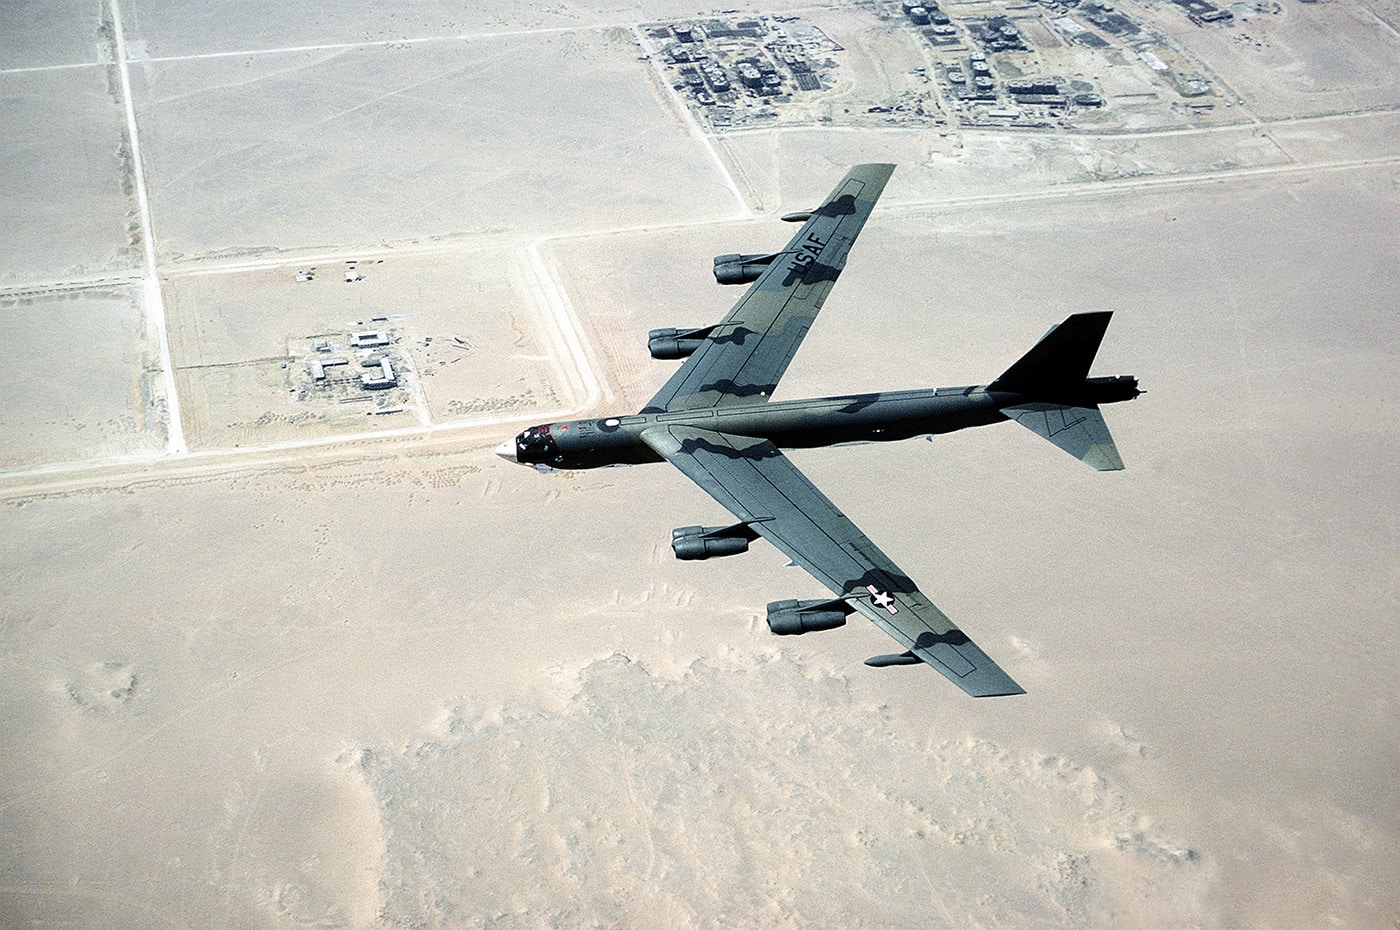 b-52 flying over egypt